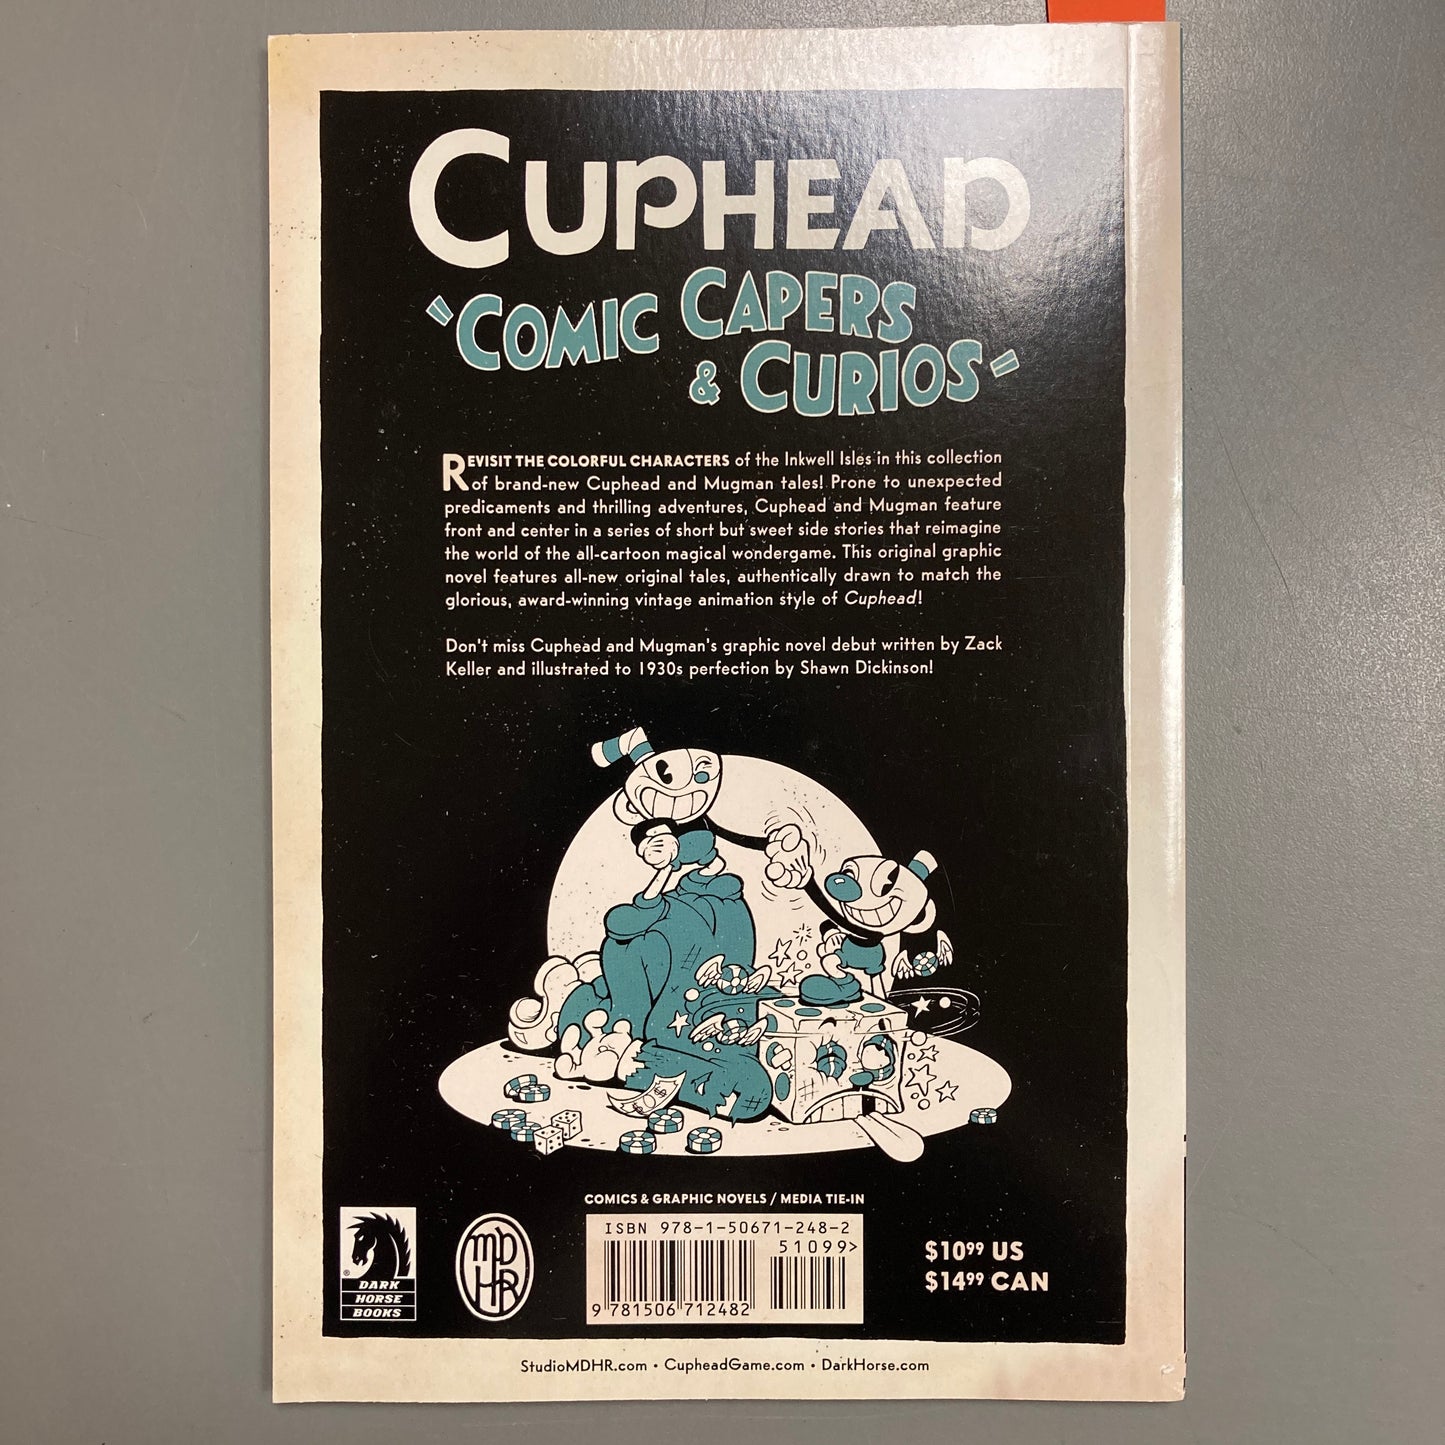 Cuphead: Comic Capers & Curios